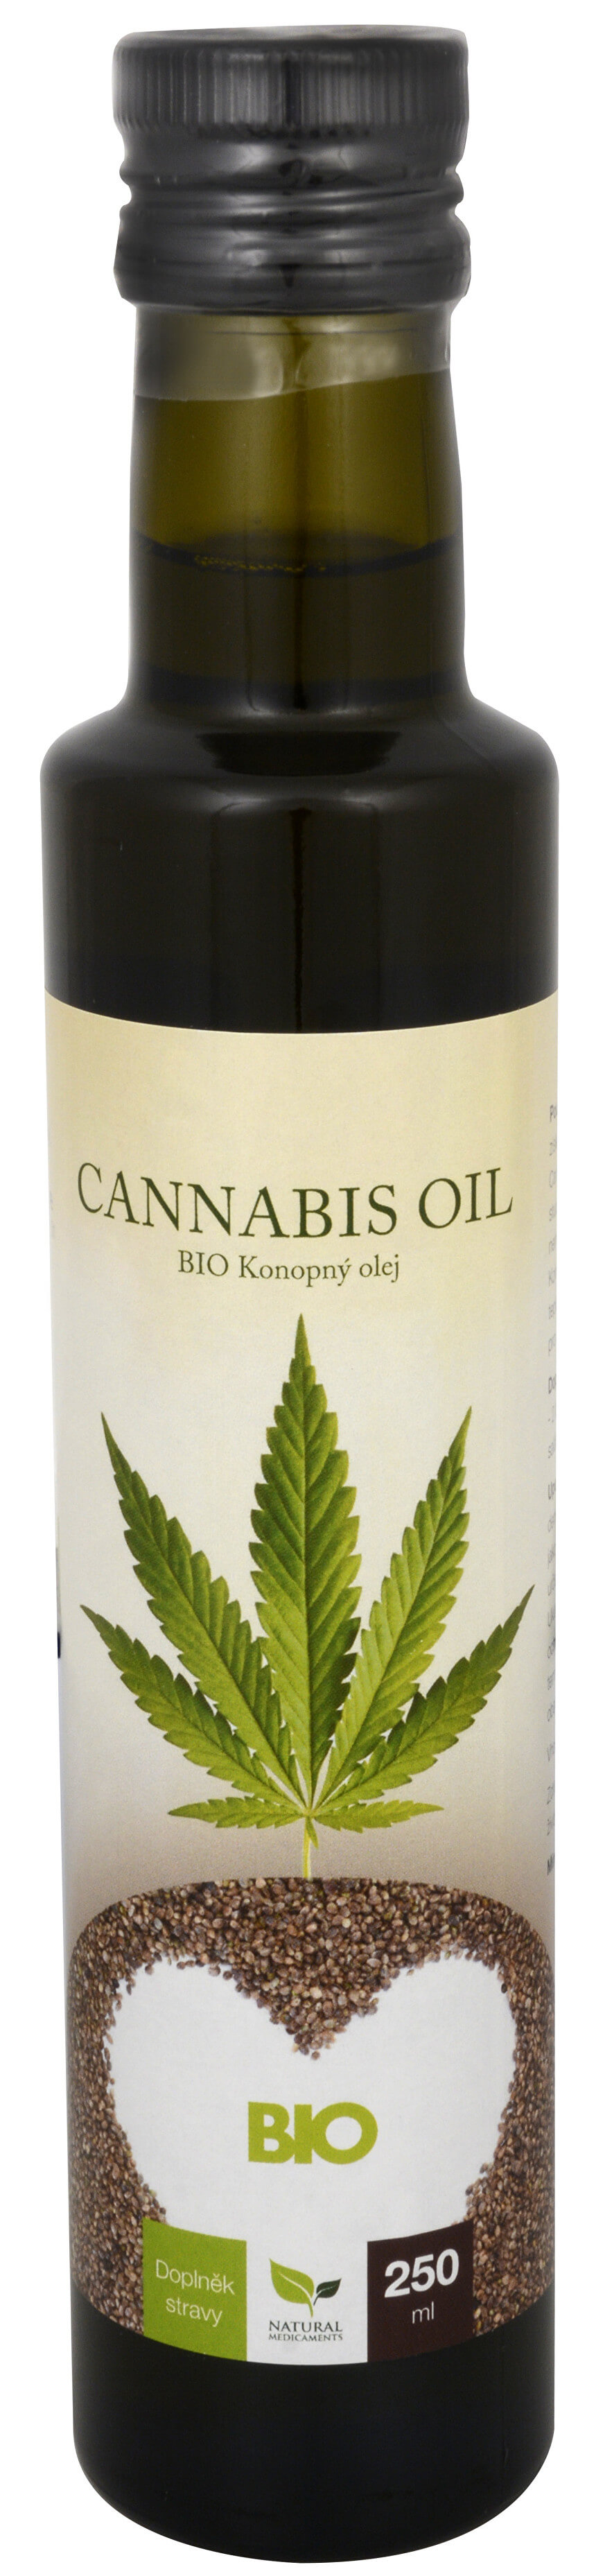 Zobrazit detail výrobku Natural Medicaments Cannabis oil - BIO Konopný olej 250 ml + 2 měsíce na vrácení zboží